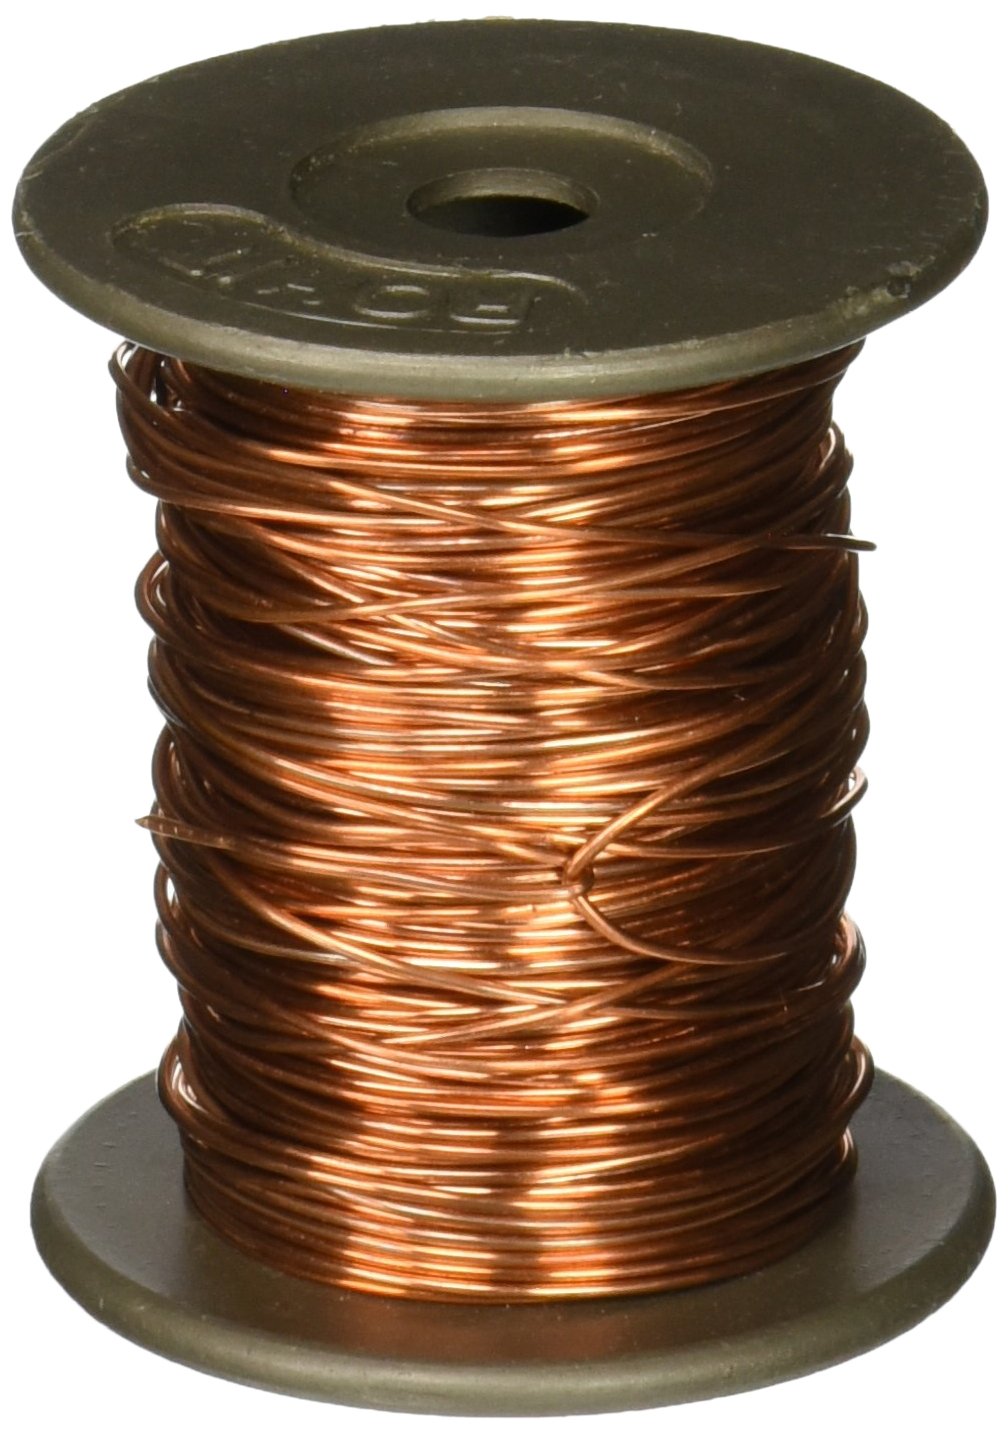 United Scientific WBC020-4oz Soft Bare Copper Wire, 4oz Spools, 20 Gauge